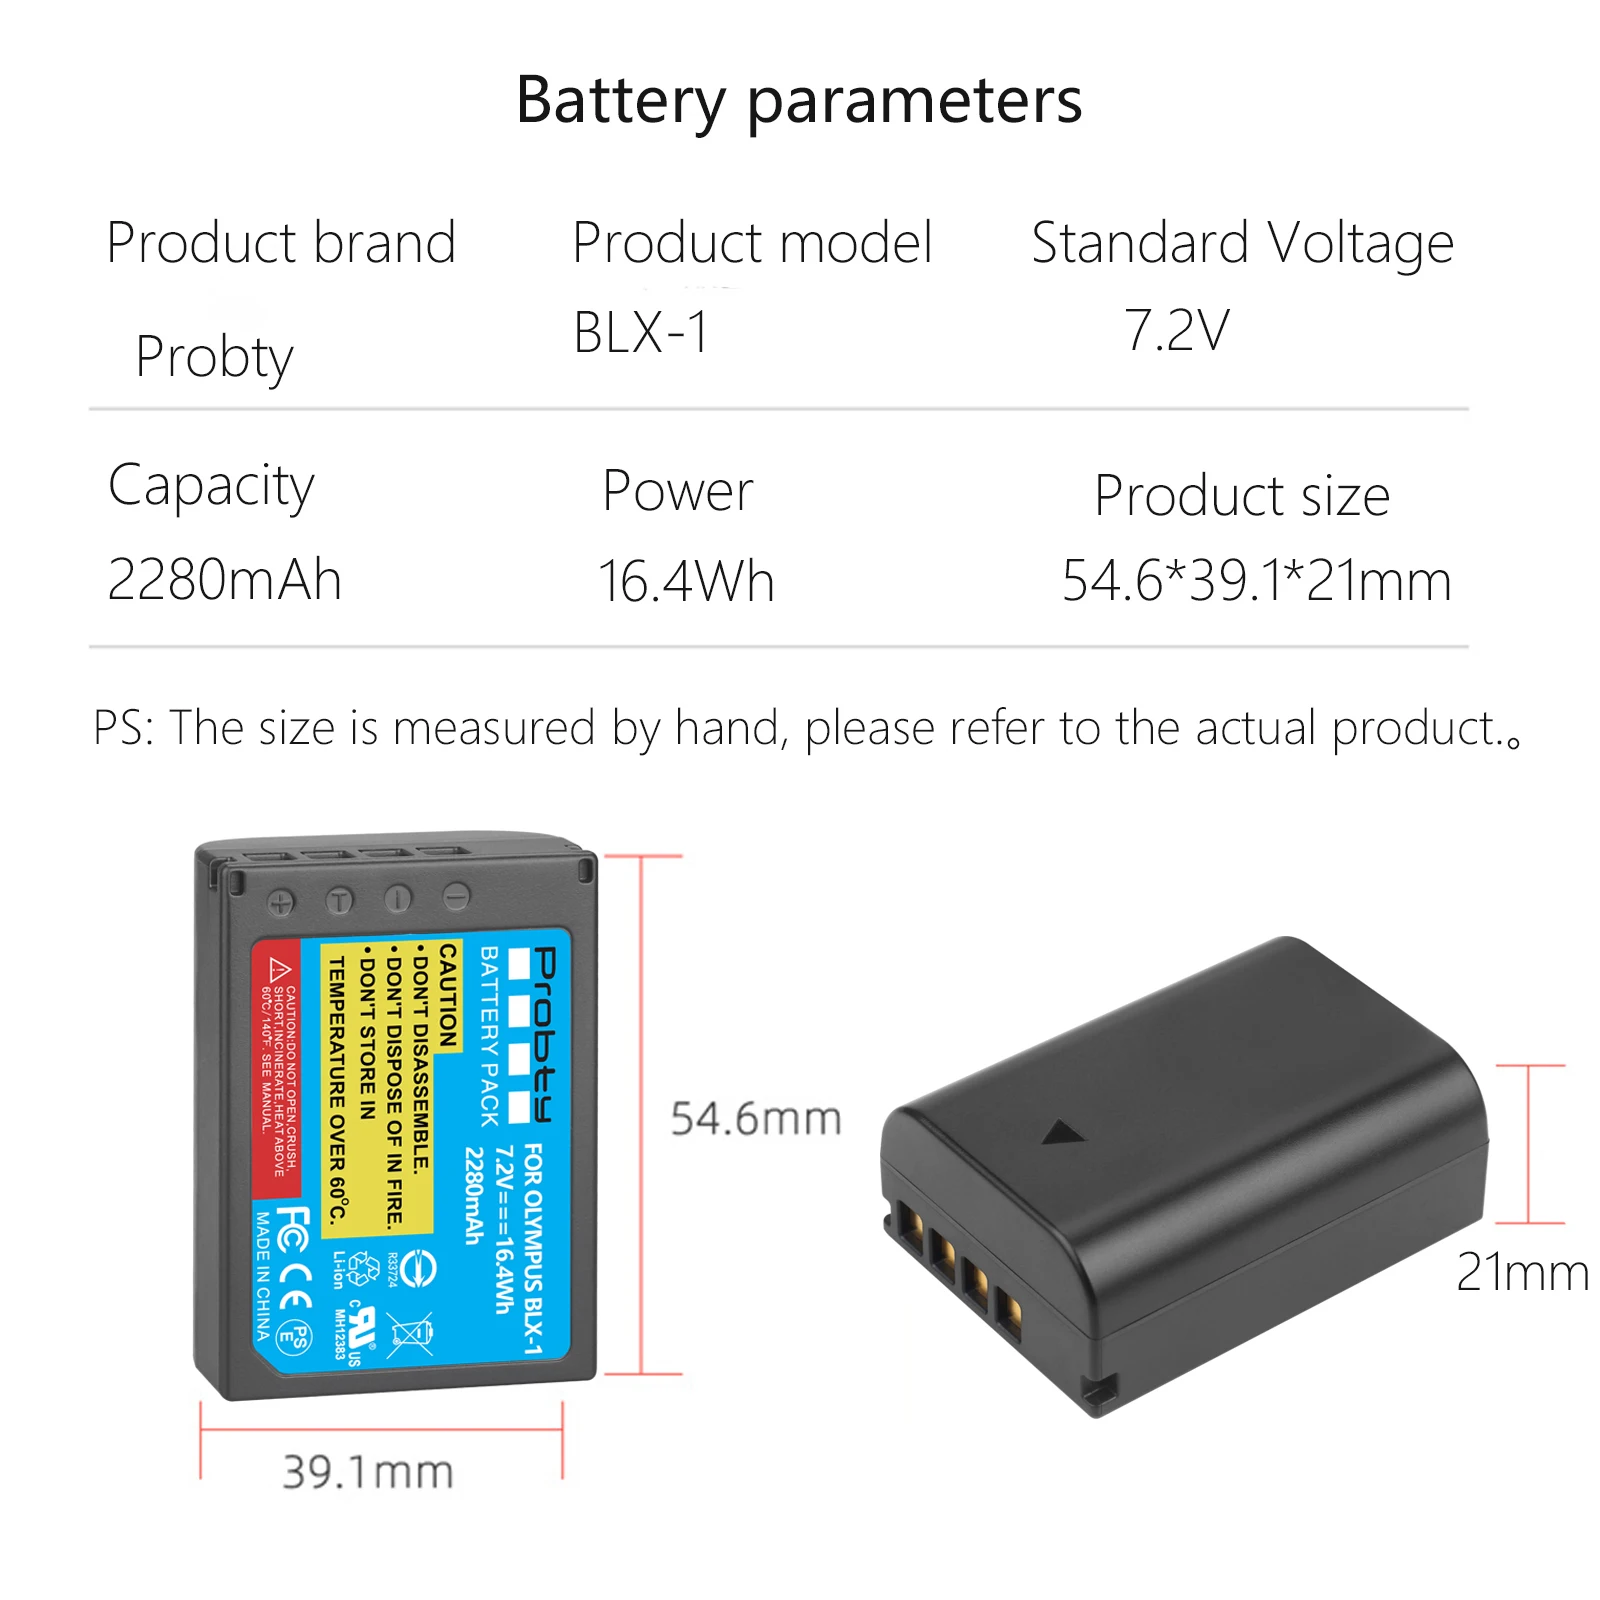 Slika /cdn/5-Blx-1-blx1-baterija-2280-mah-led-dual-usb-punjač-za-thumbs-762.jpeg